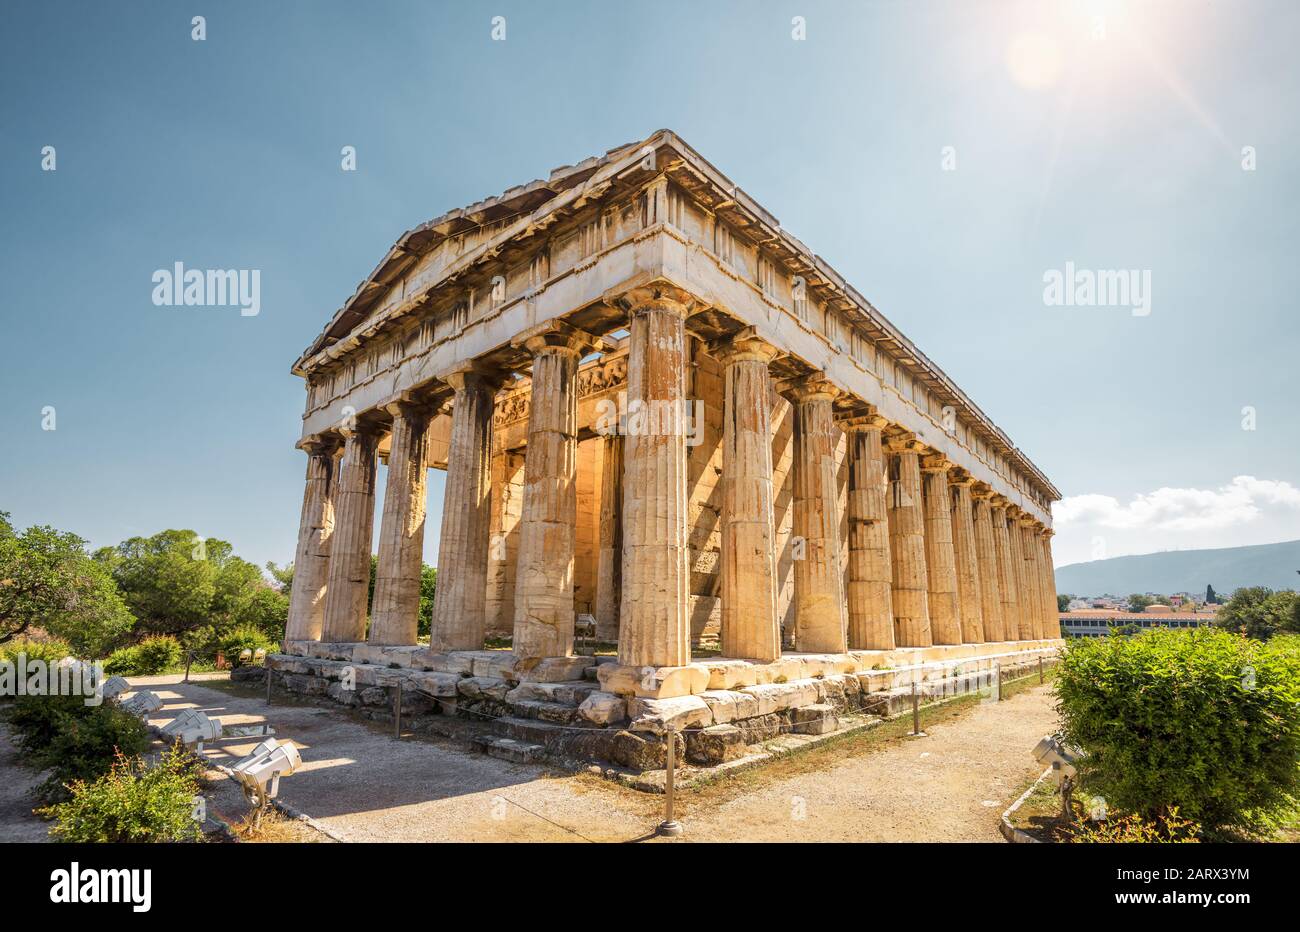 Tempel des Hephaestus in Agora, Athen, Griechenland. Es ist eines der wichtigsten Wahrzeichen Athens. Sonniger Blick auf den antiken griechischen Tempel von Hephaestus. Berühmt Stockfoto